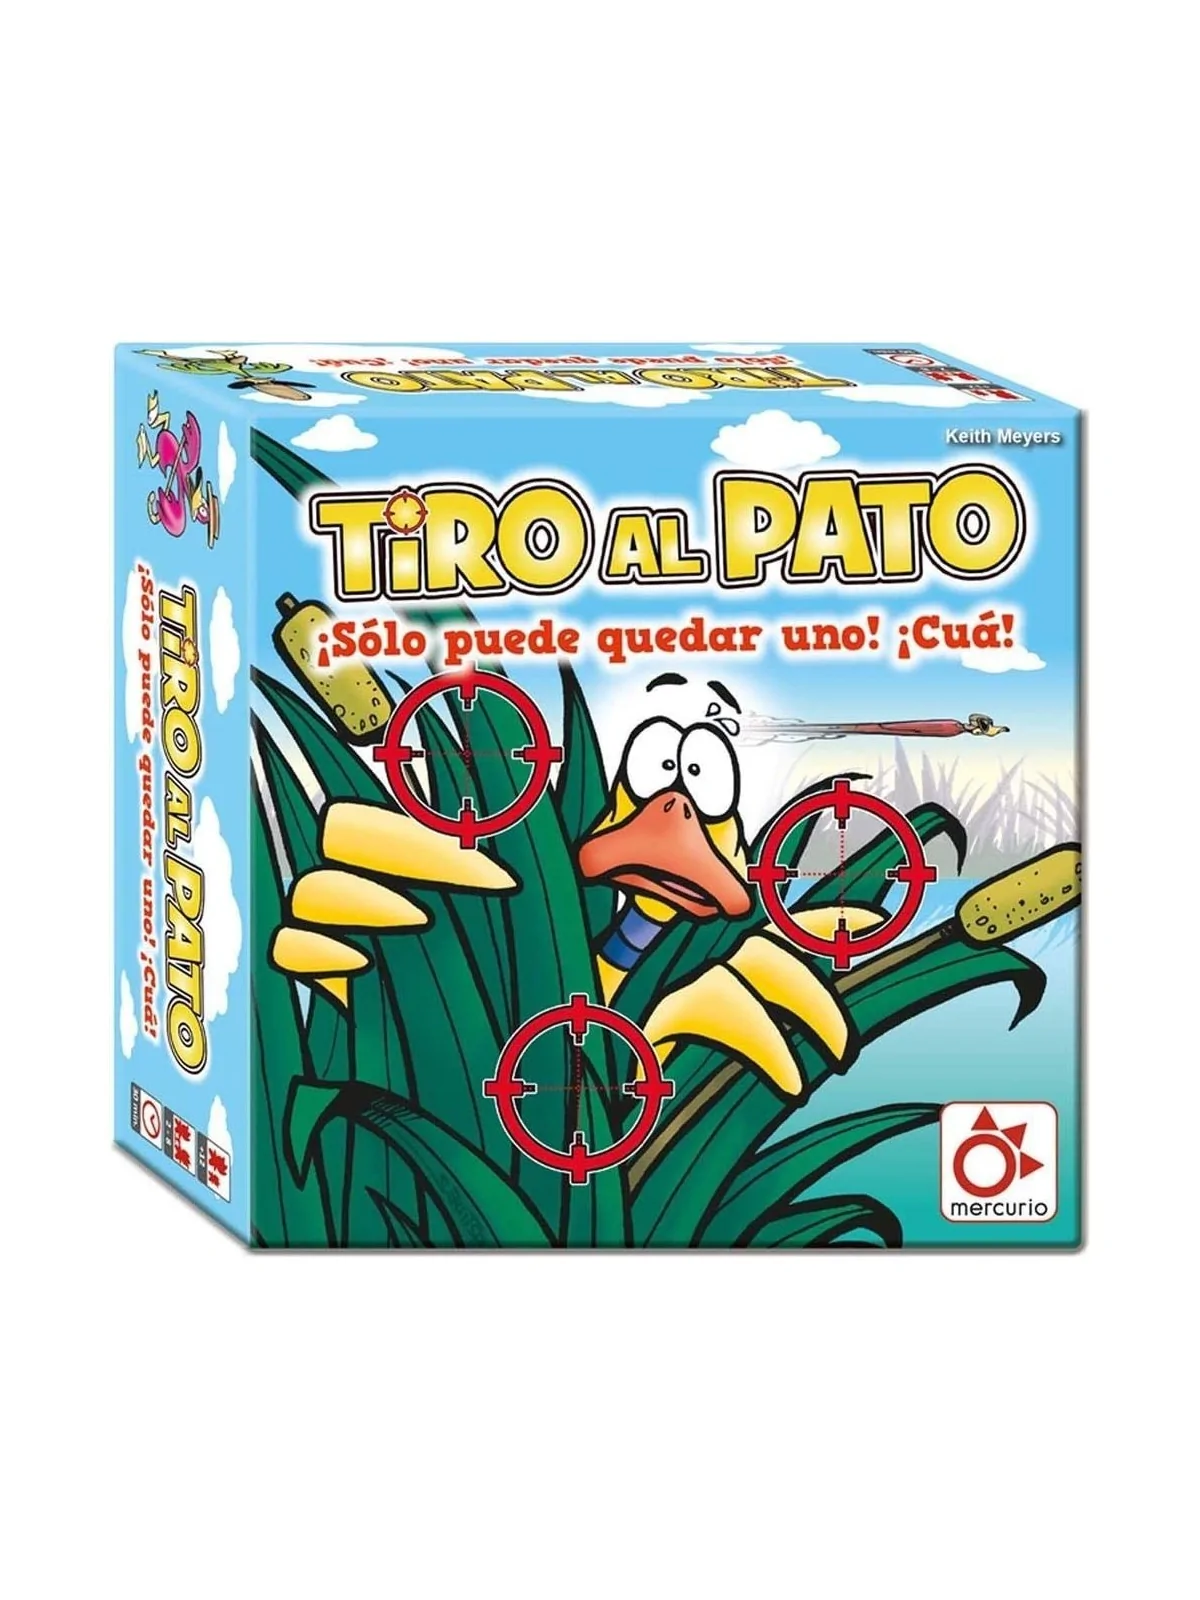 Comprar Tiro al Pato: Nueva Edición barato al mejor precio 13,95 € de 